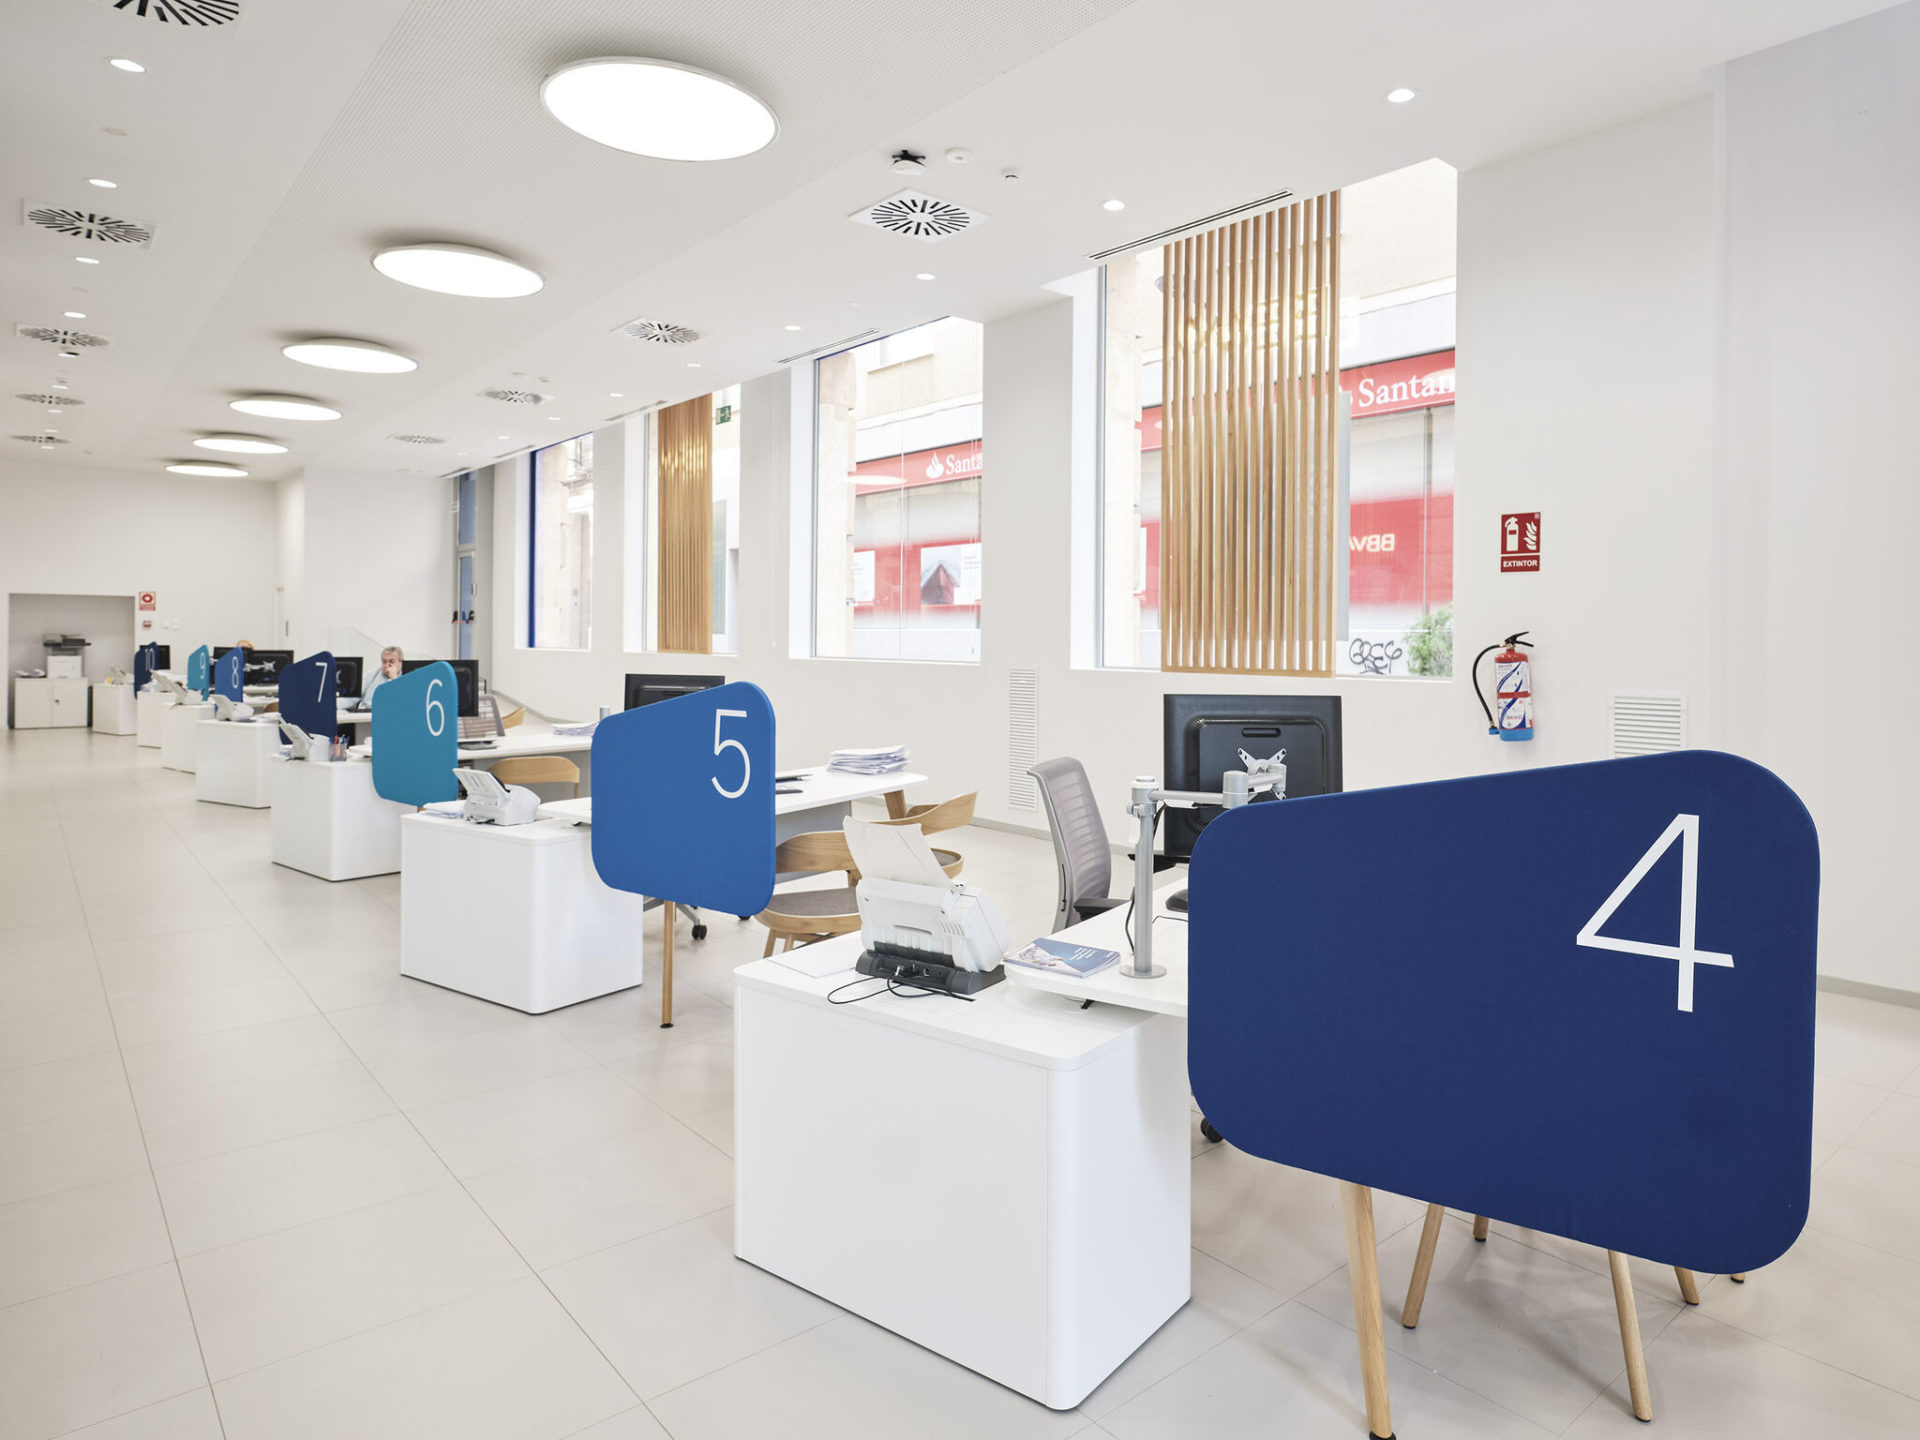 Los bancos rediseñan la experiencia del usuario en las oficinas a través del diseño.